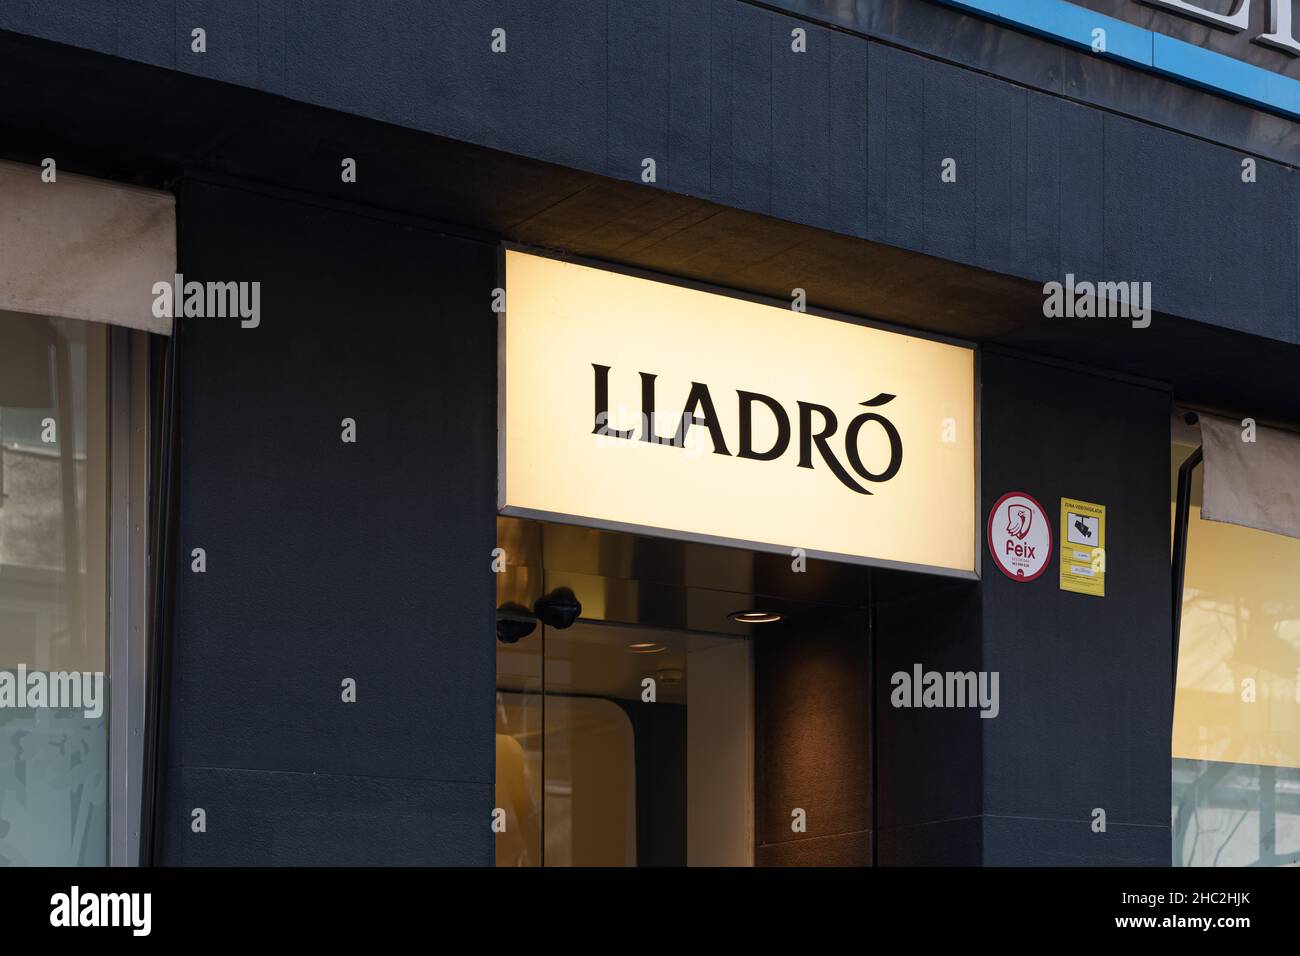 VALENCIA, SPANIEN - 15. DEZEMBER 2021: Lladro ist ein spanisches Unternehmen, das dekorative Skulpturen und Porzellanfiguren herstellt Stockfoto